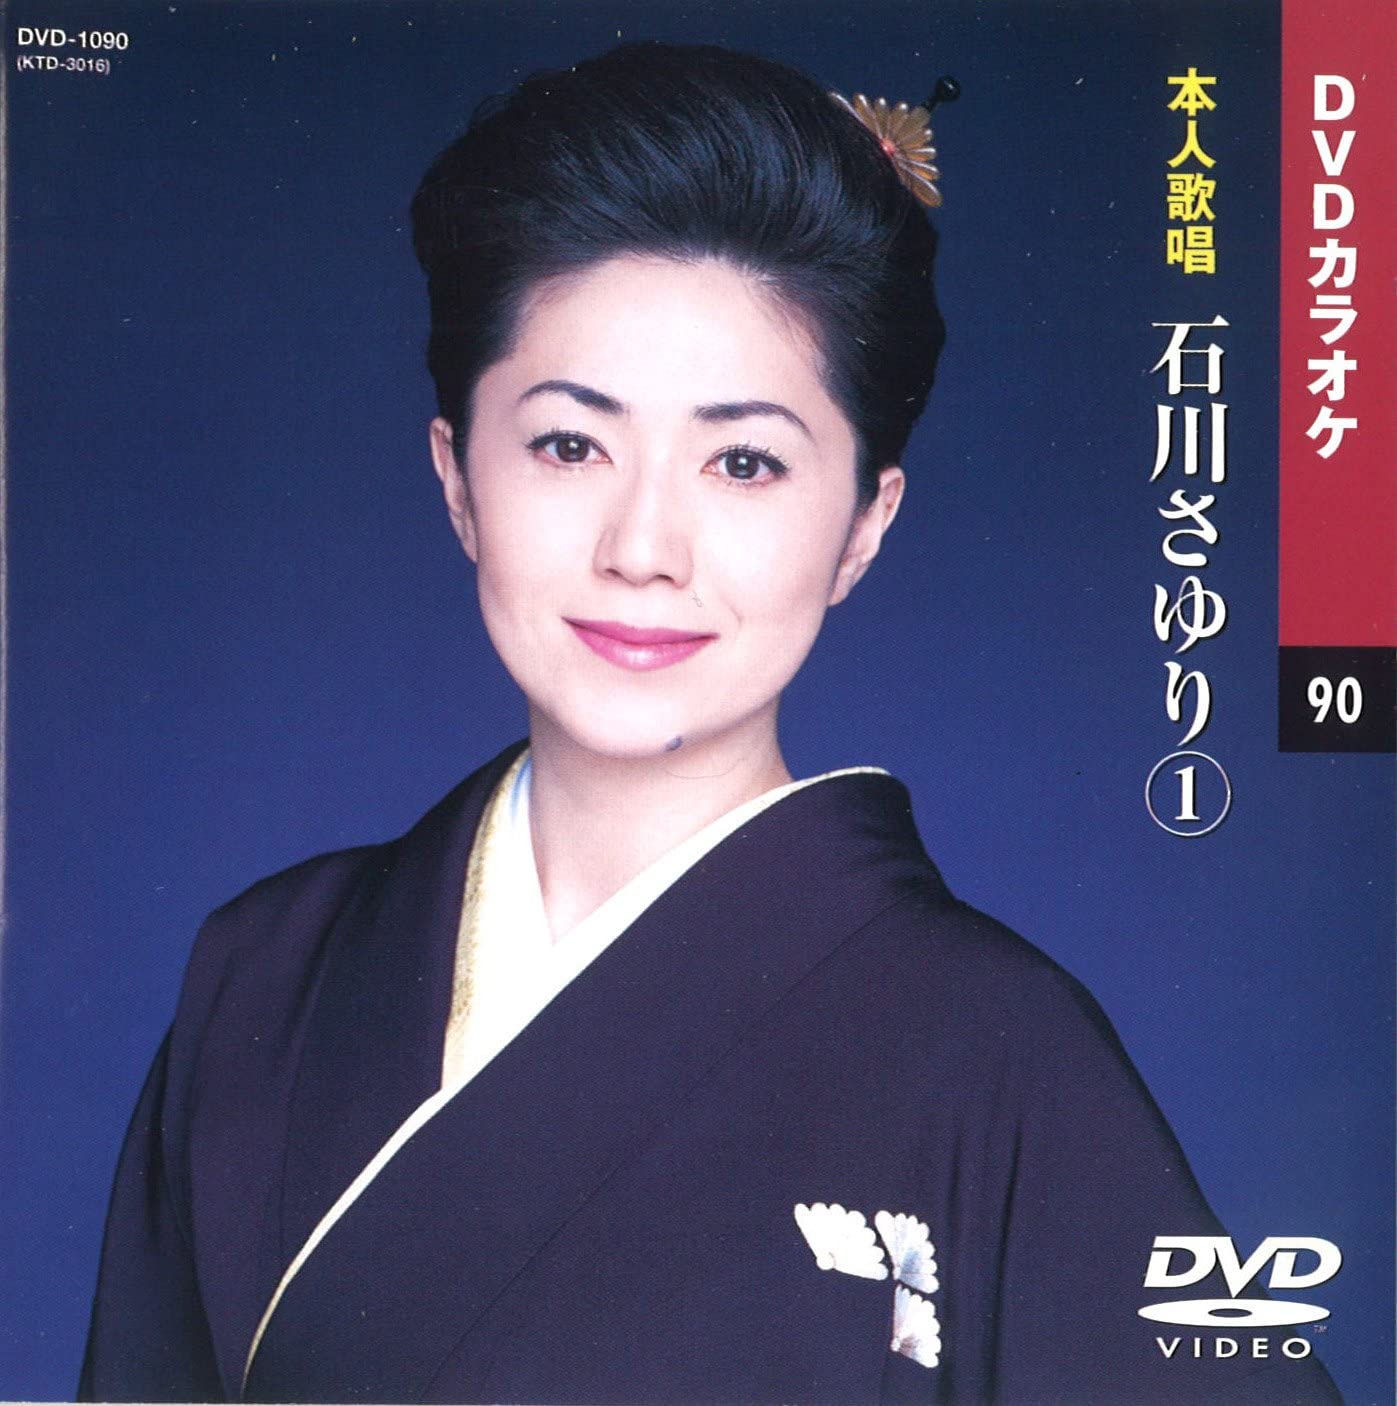 【本人歌唱DVDカラオケ】 石川さゆり 1 (DVDカラオケ) DVD-1090